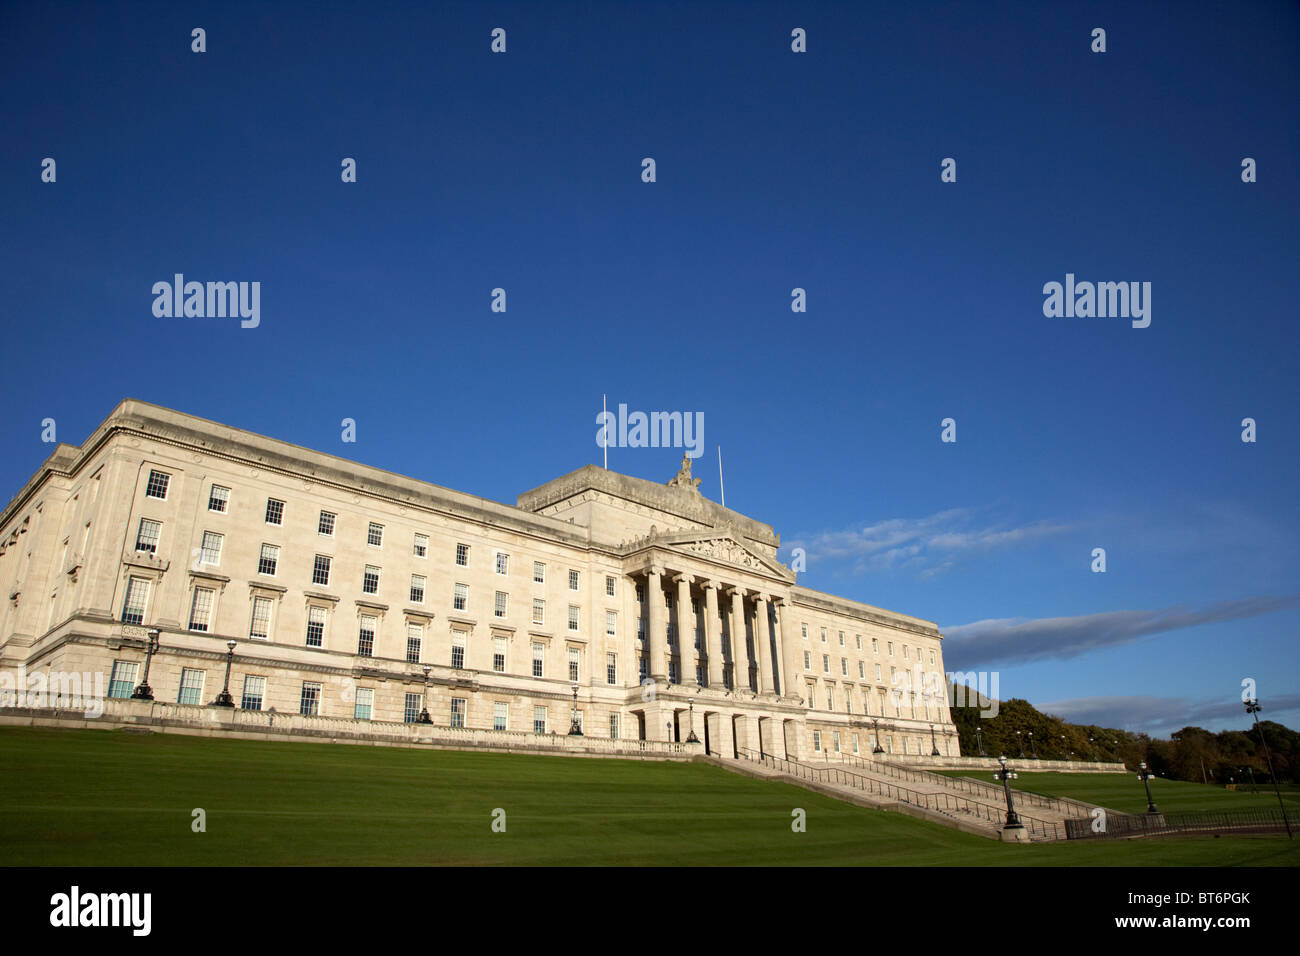 Les édifices du parlement de l'Irlande du Nord Belfast Irlande du Nord Royaume-Uni stormont Banque D'Images